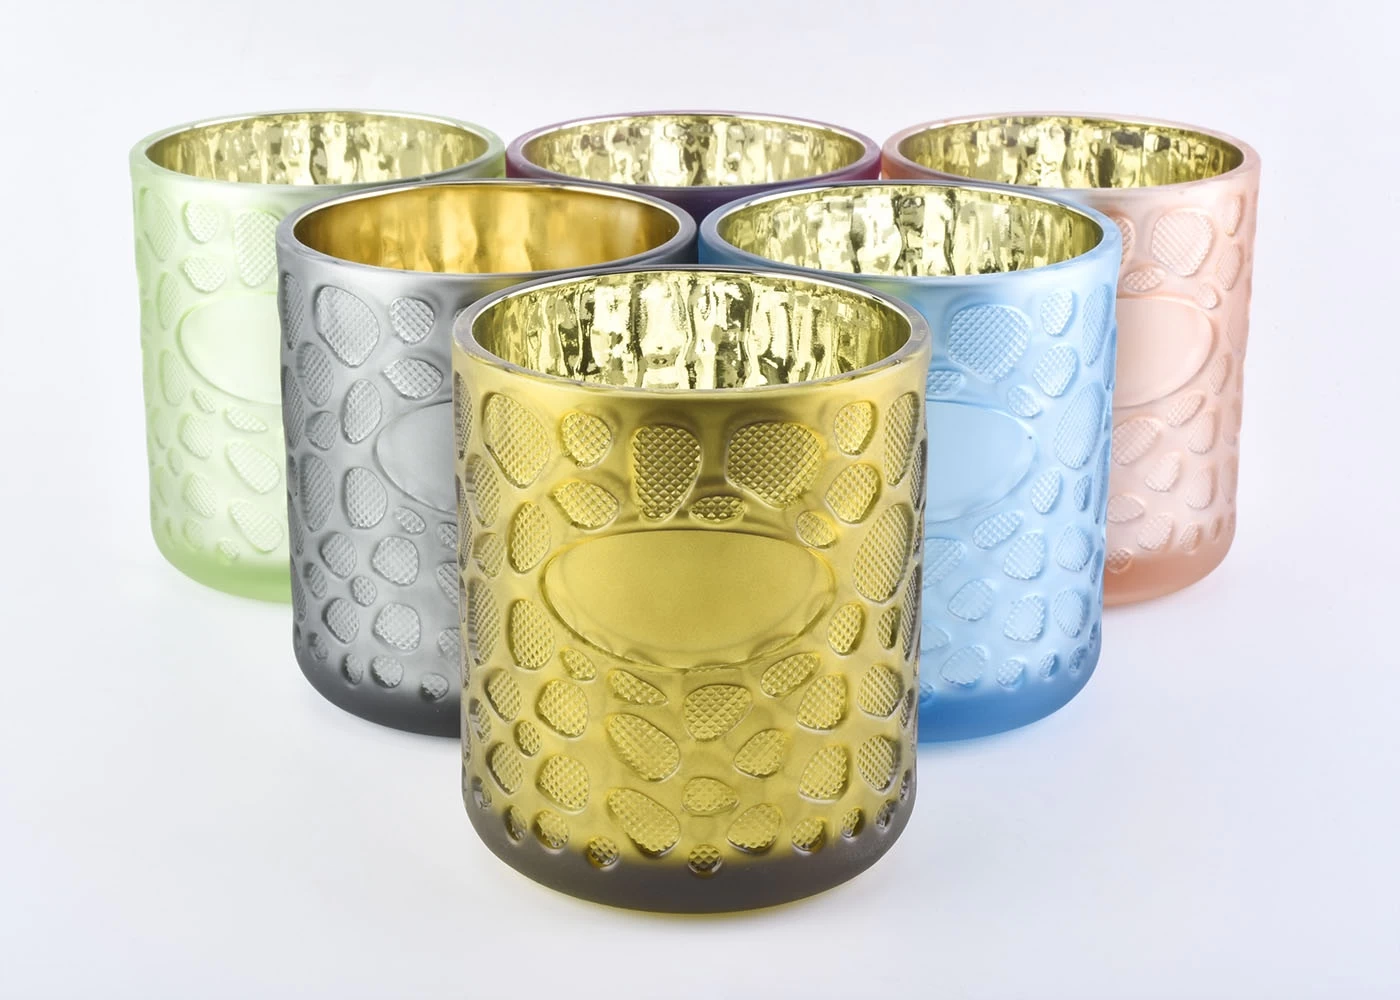 Sunny Design Unique Decorative White Glass Candle Holders